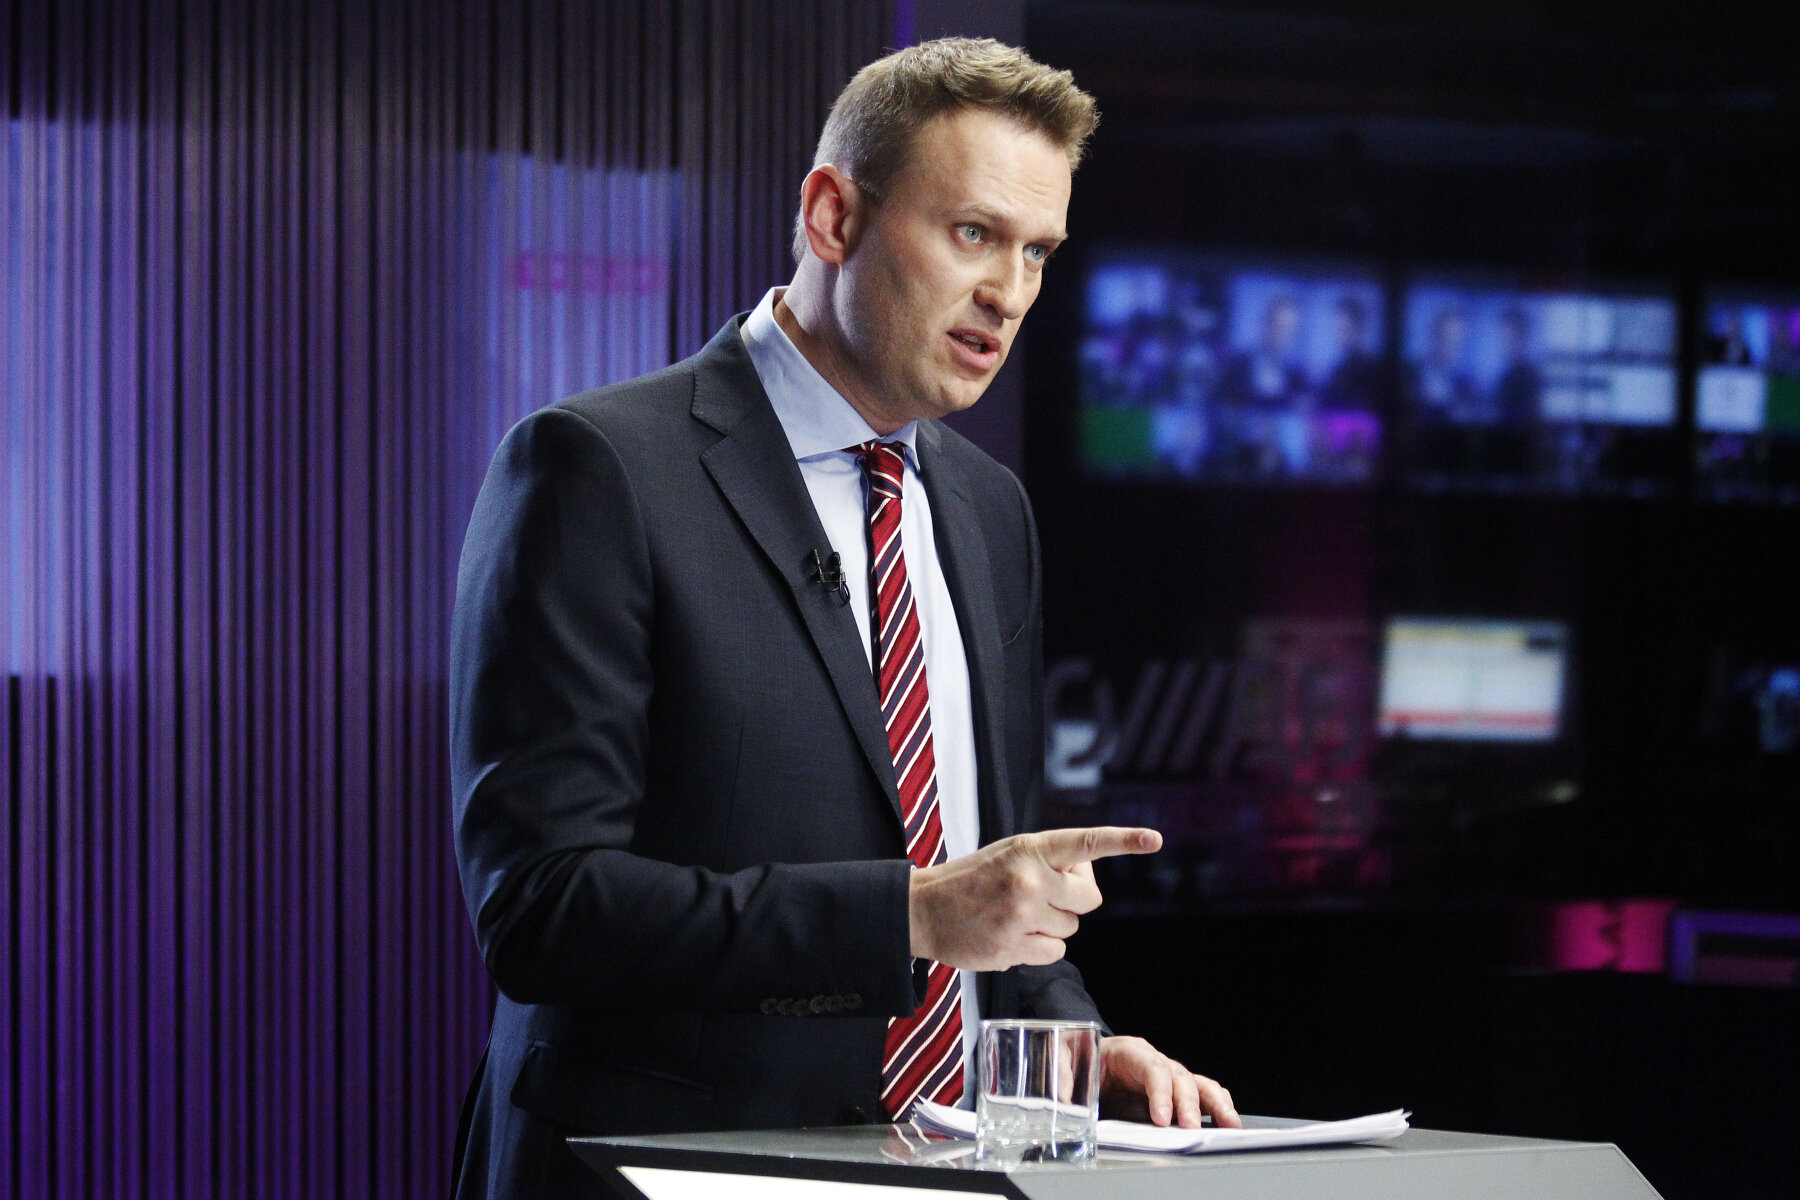 <p>Навальный настаивал на том, что компании Лебедева являются крупными господрядчиками и должны раскрывать данные о госконтрактах. Лебедев отвечал, что выступает как субподрядчик, а не выигрывал все контракты напрямую у государства.</p>